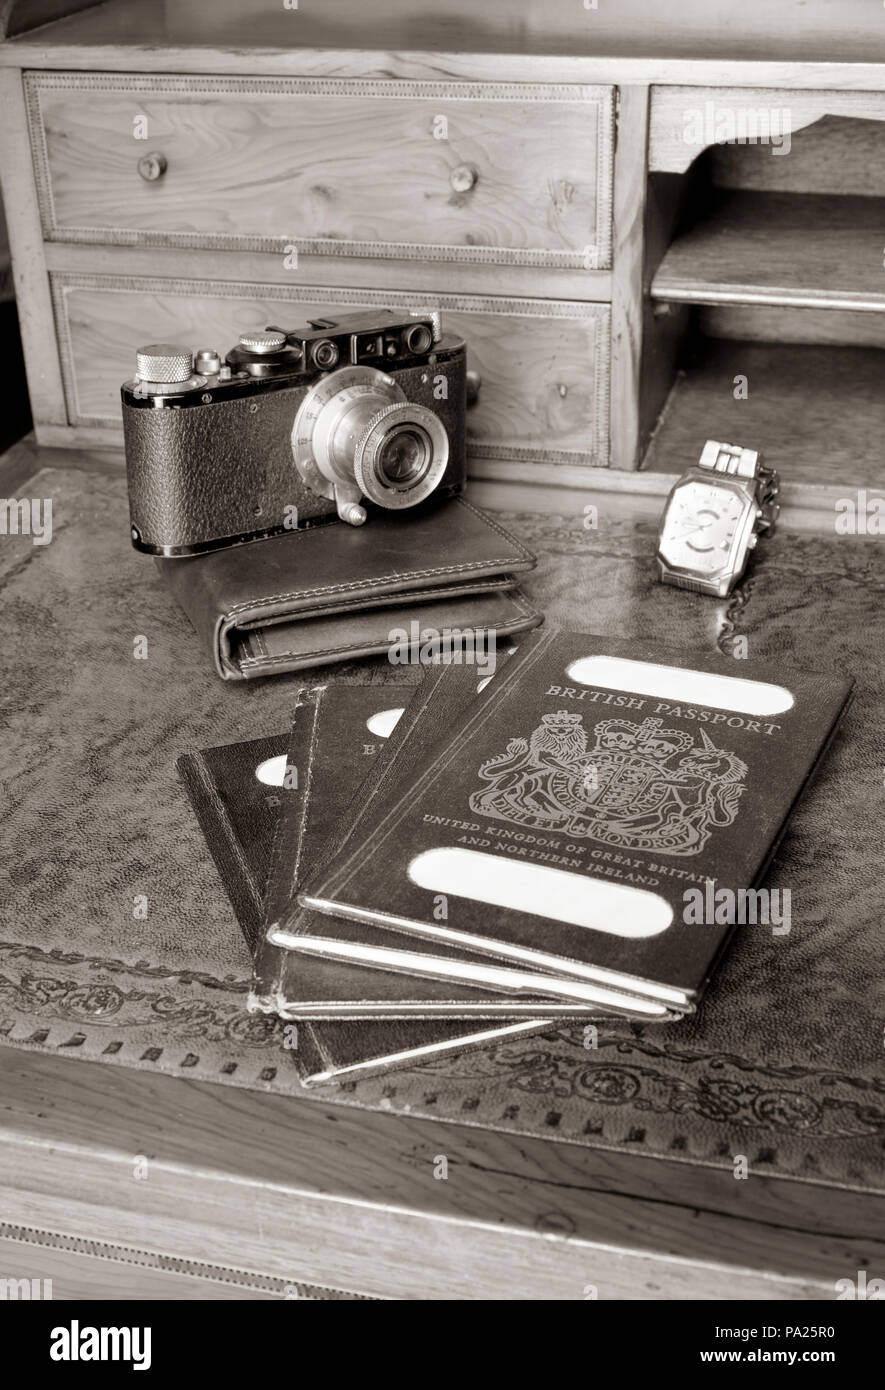 Antica scrivania con passaporti e vecchia leica fotocamera, guarda con nomi tranciati Foto Stock